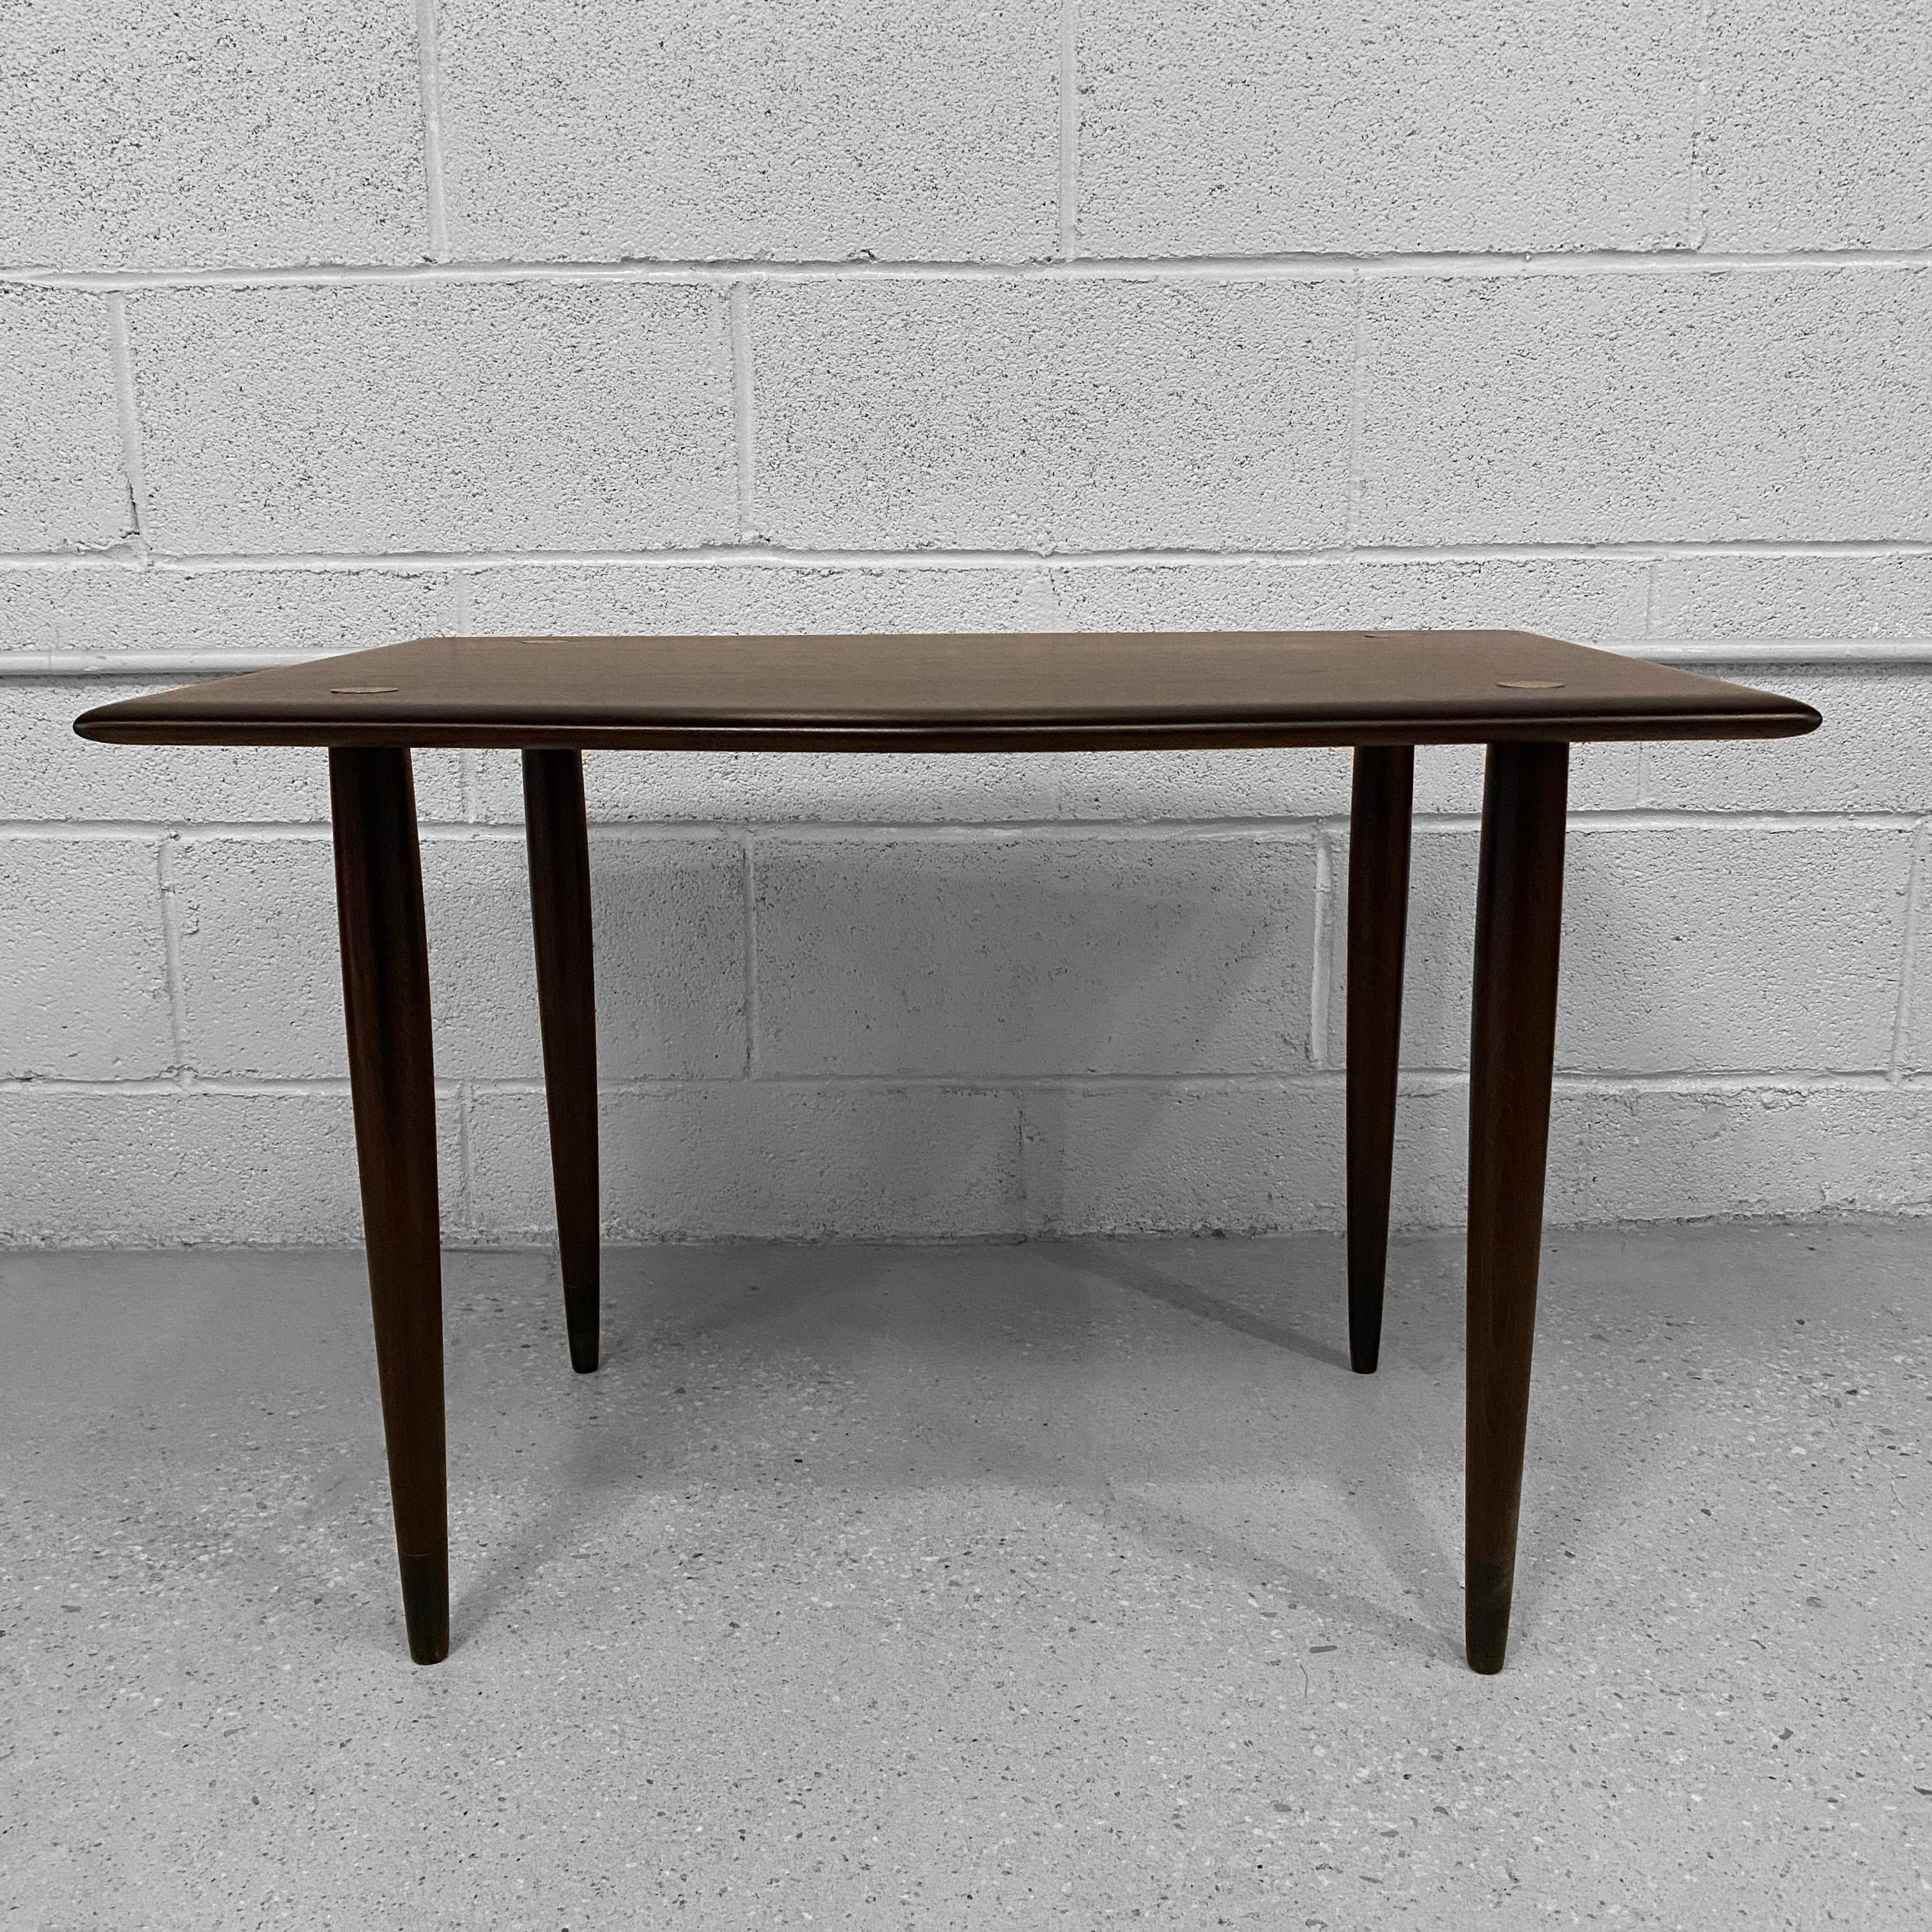 Ebonized Scandinavian Modern Teak Side Table By Yngve Ekström For Dux For Sale